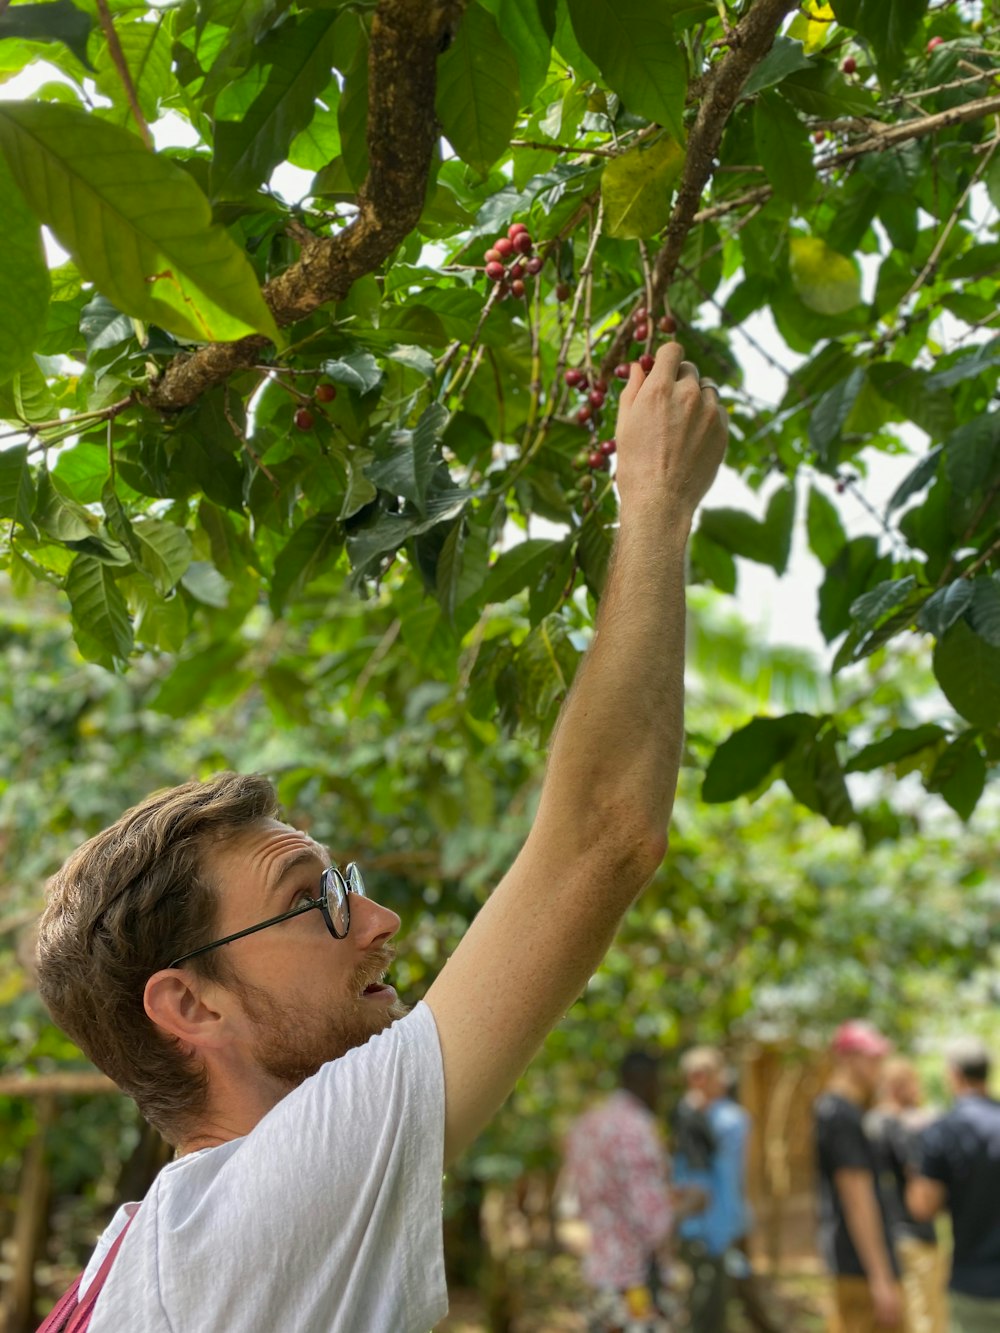 木から果実を摘むために手を伸ばす男